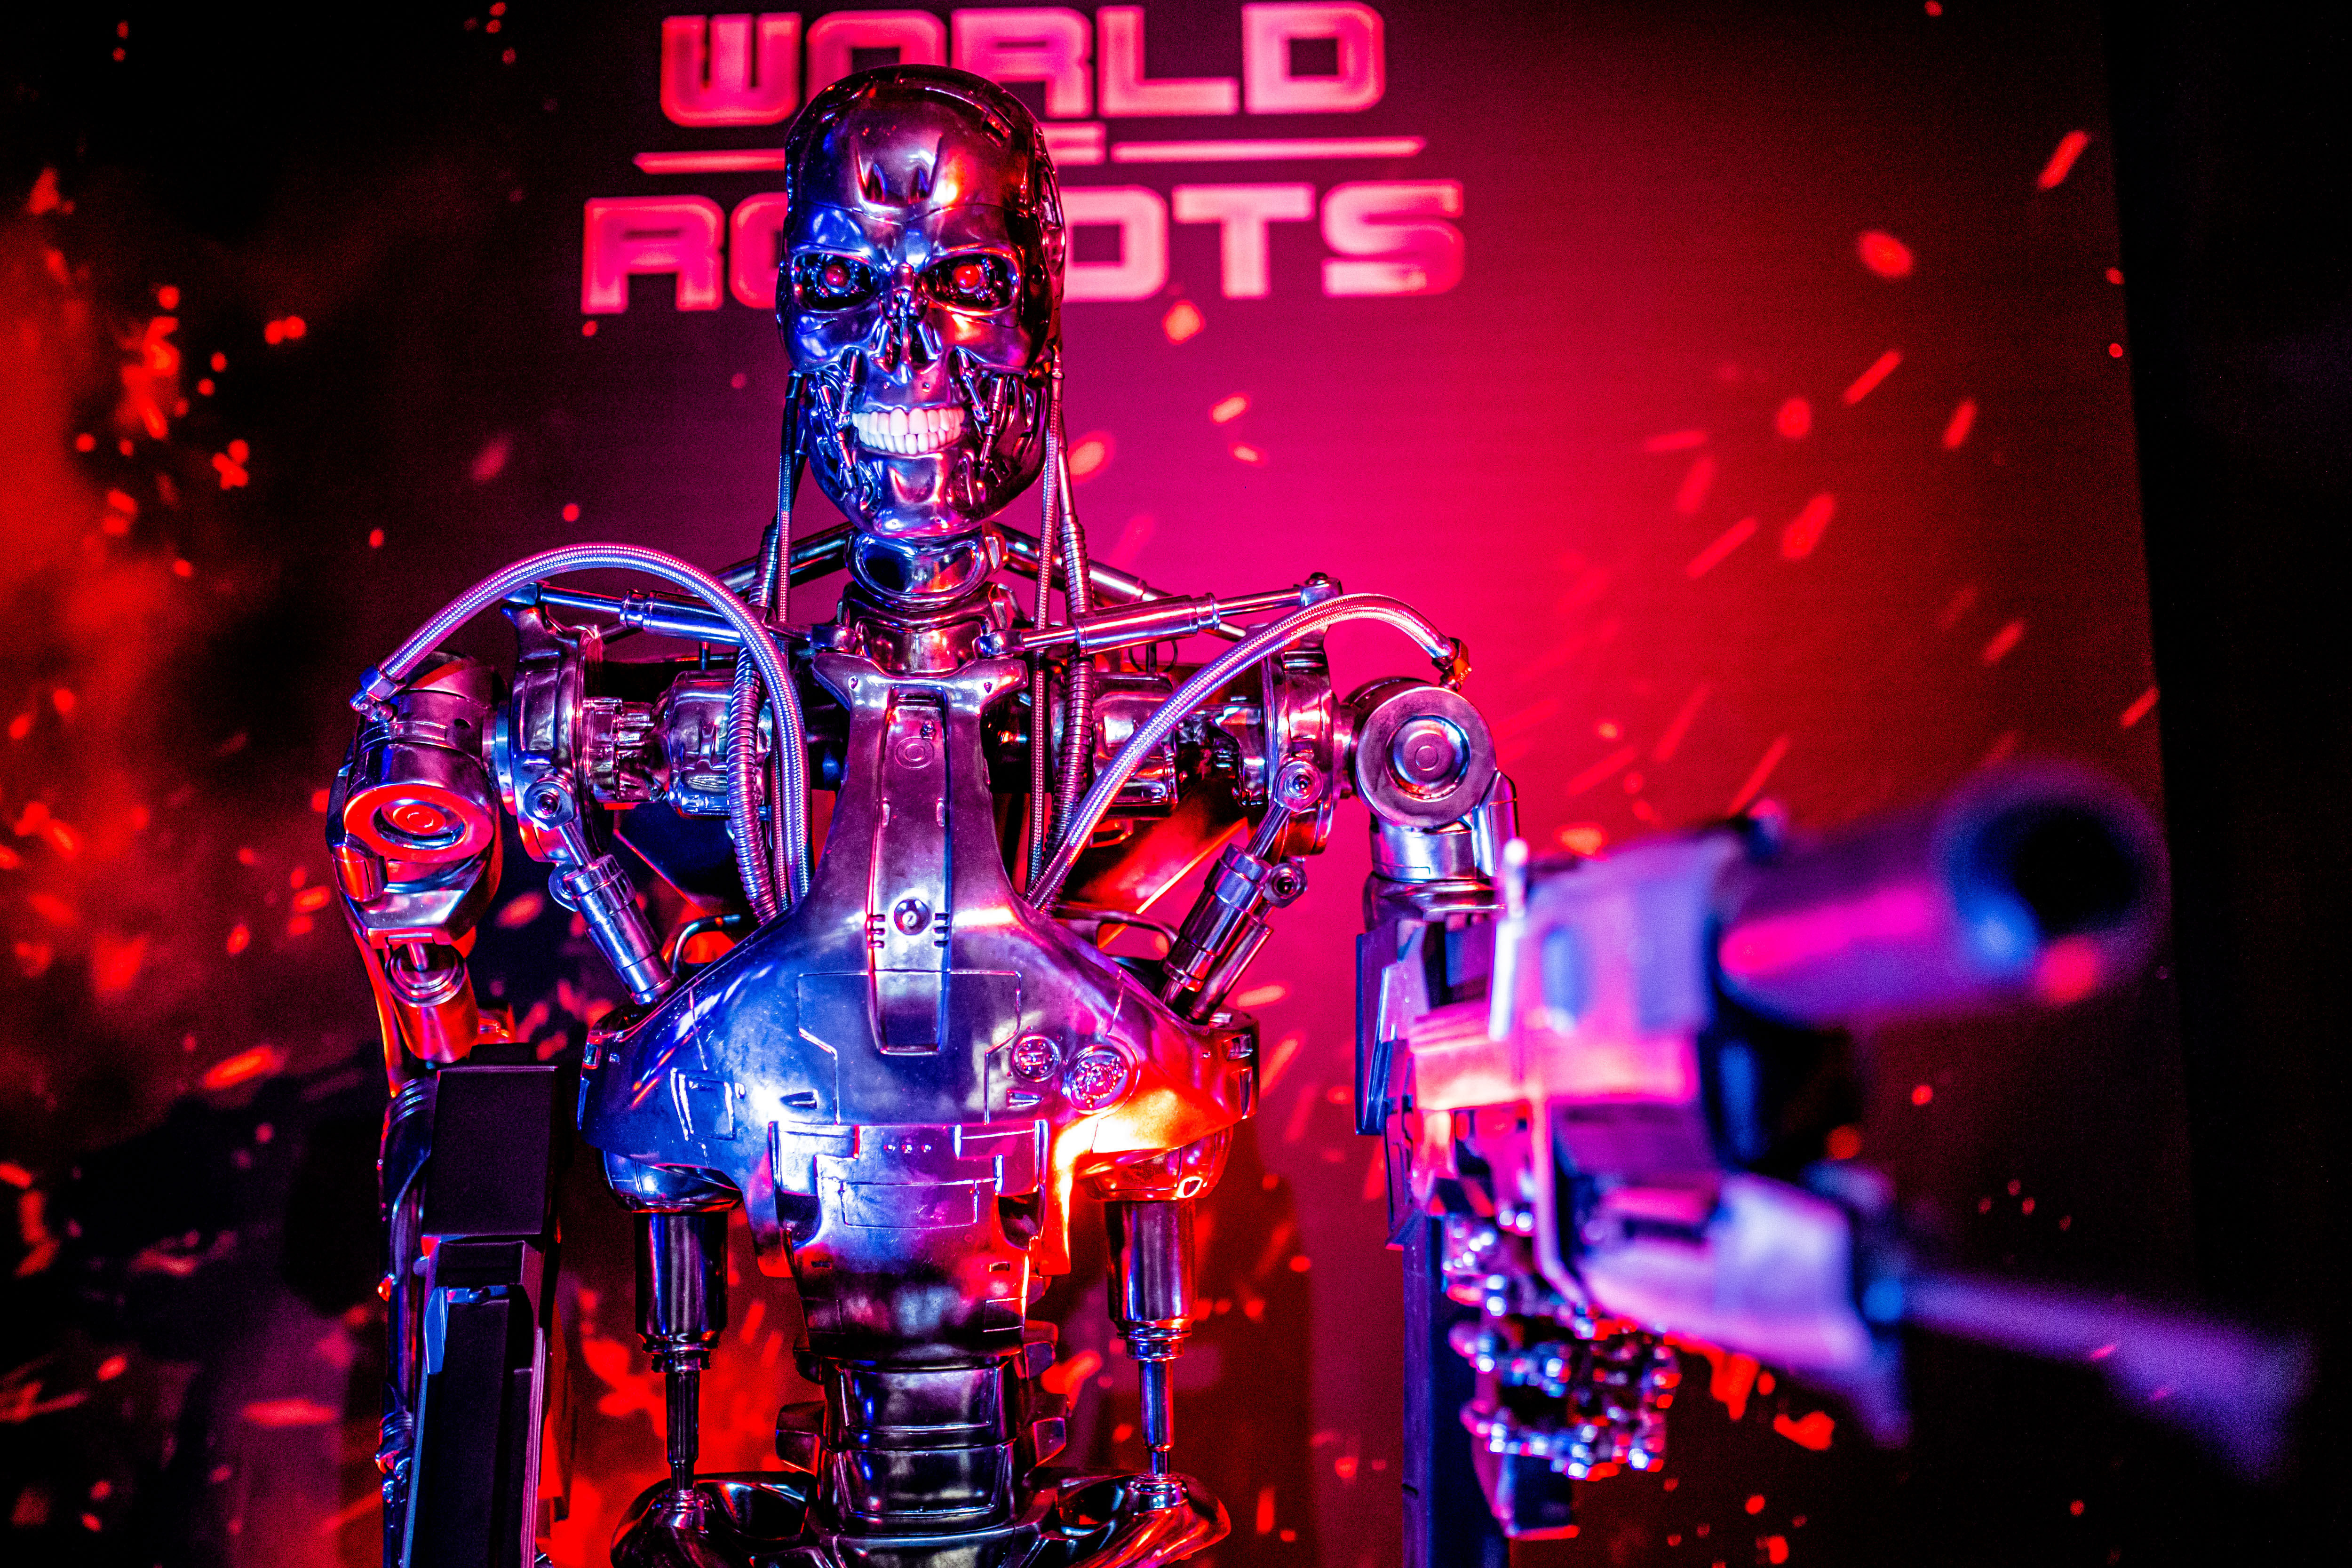 3 hónapig látogatható az Etele Plazában a World of Robots, a régió legnagyobb robotkiállítása!